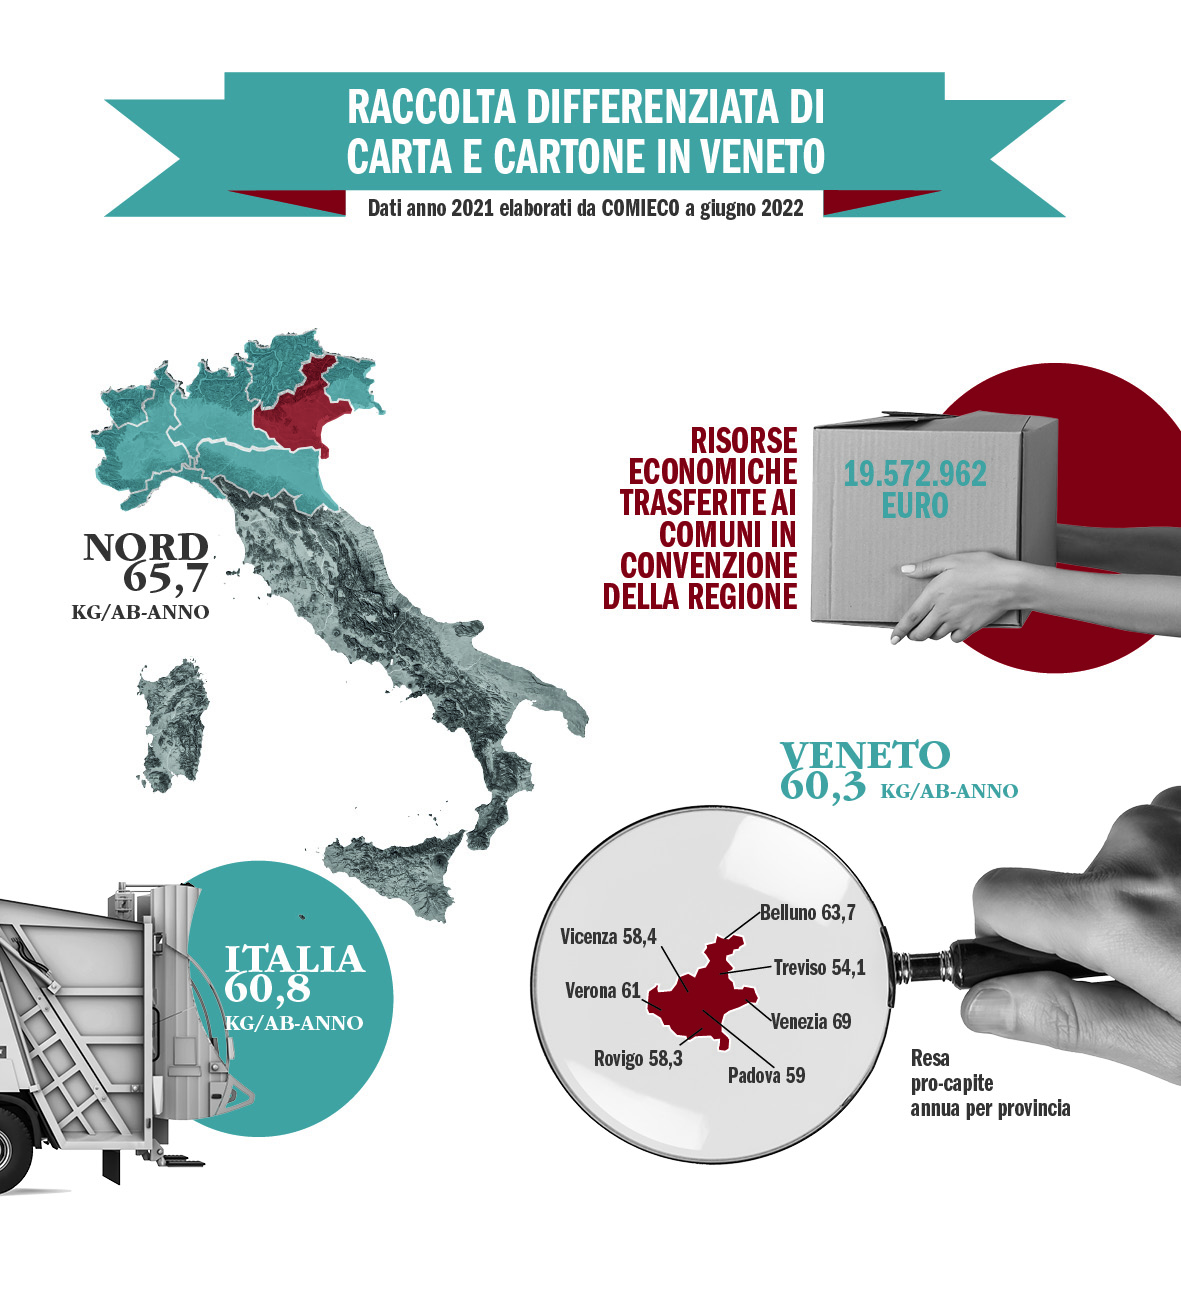 Nel 2021 in Veneto la raccolta di carta e cartone aumenta dell’1,2%. A Verona 61 chili per abitante